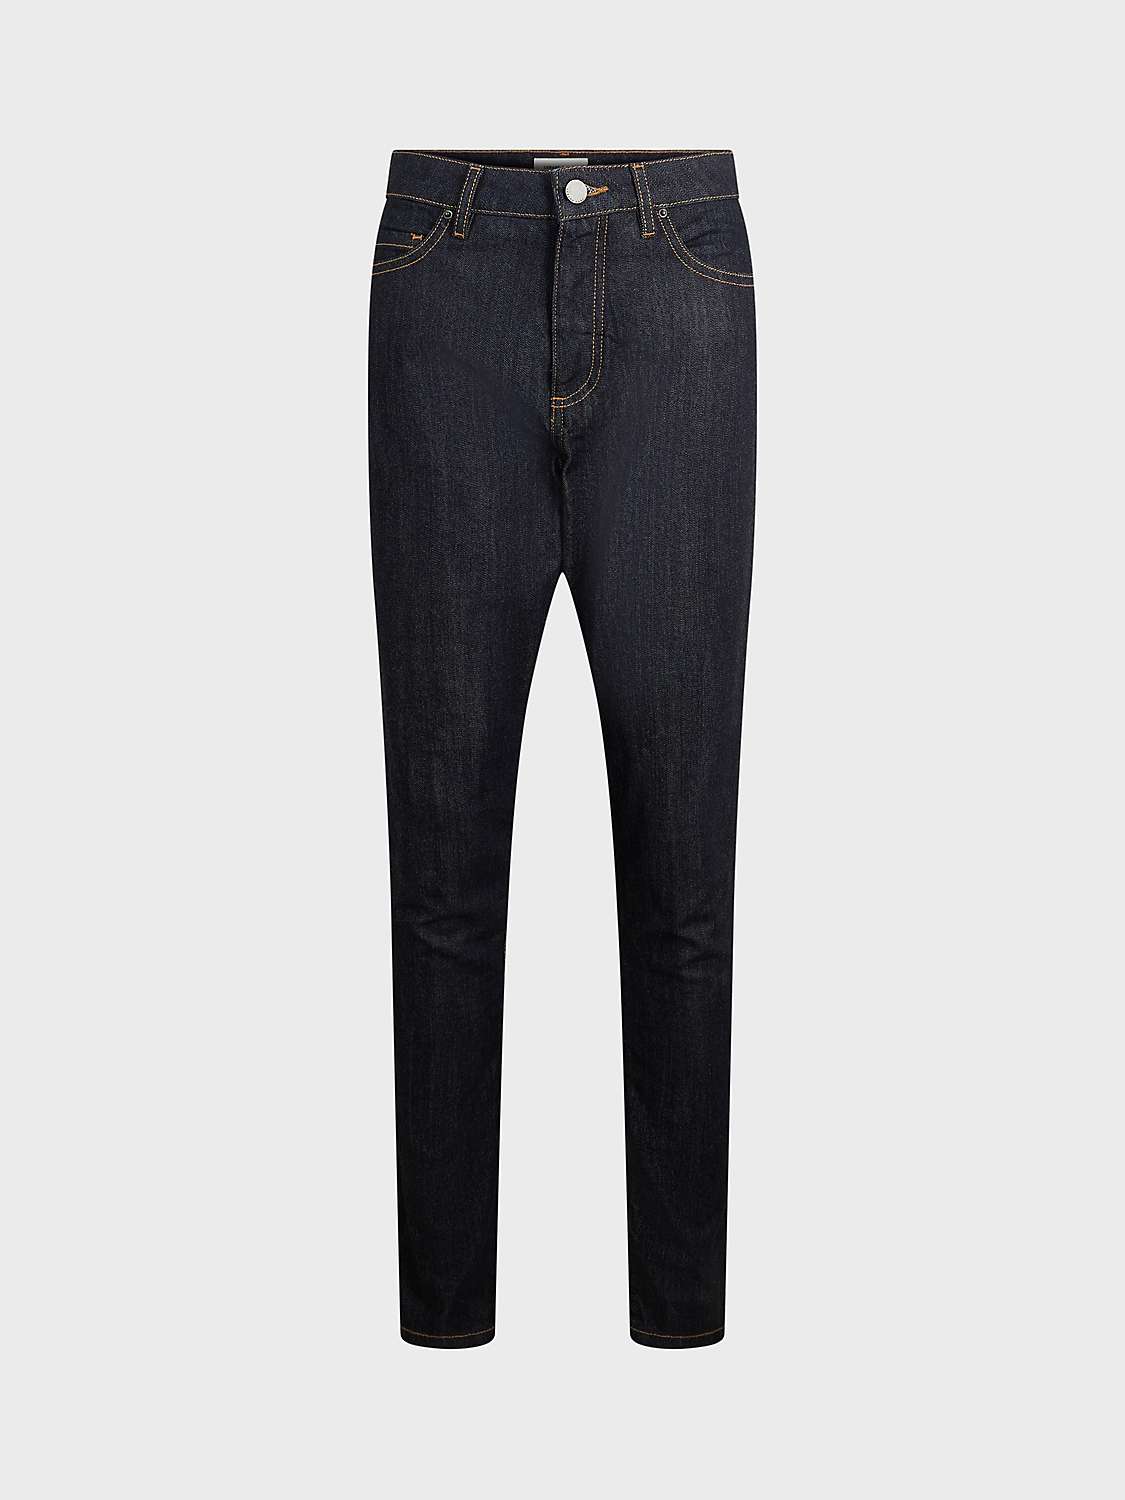 Gerard Darel Esme Skinny Jeans, Blue at John Lewis & Partners